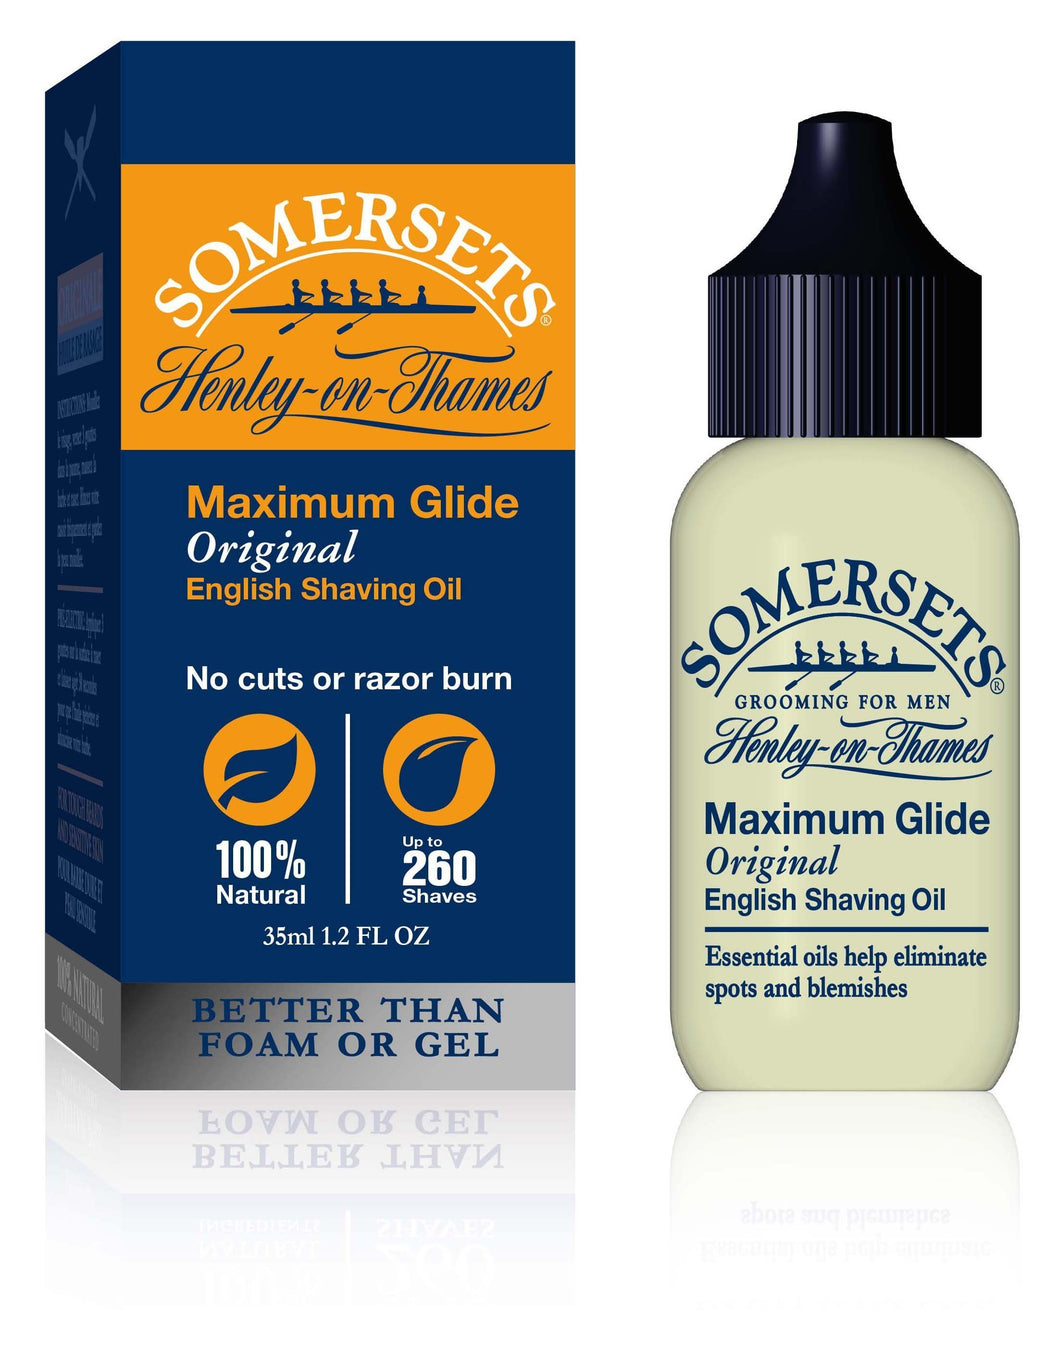 Somersets Shaving Oil 35ml - Original